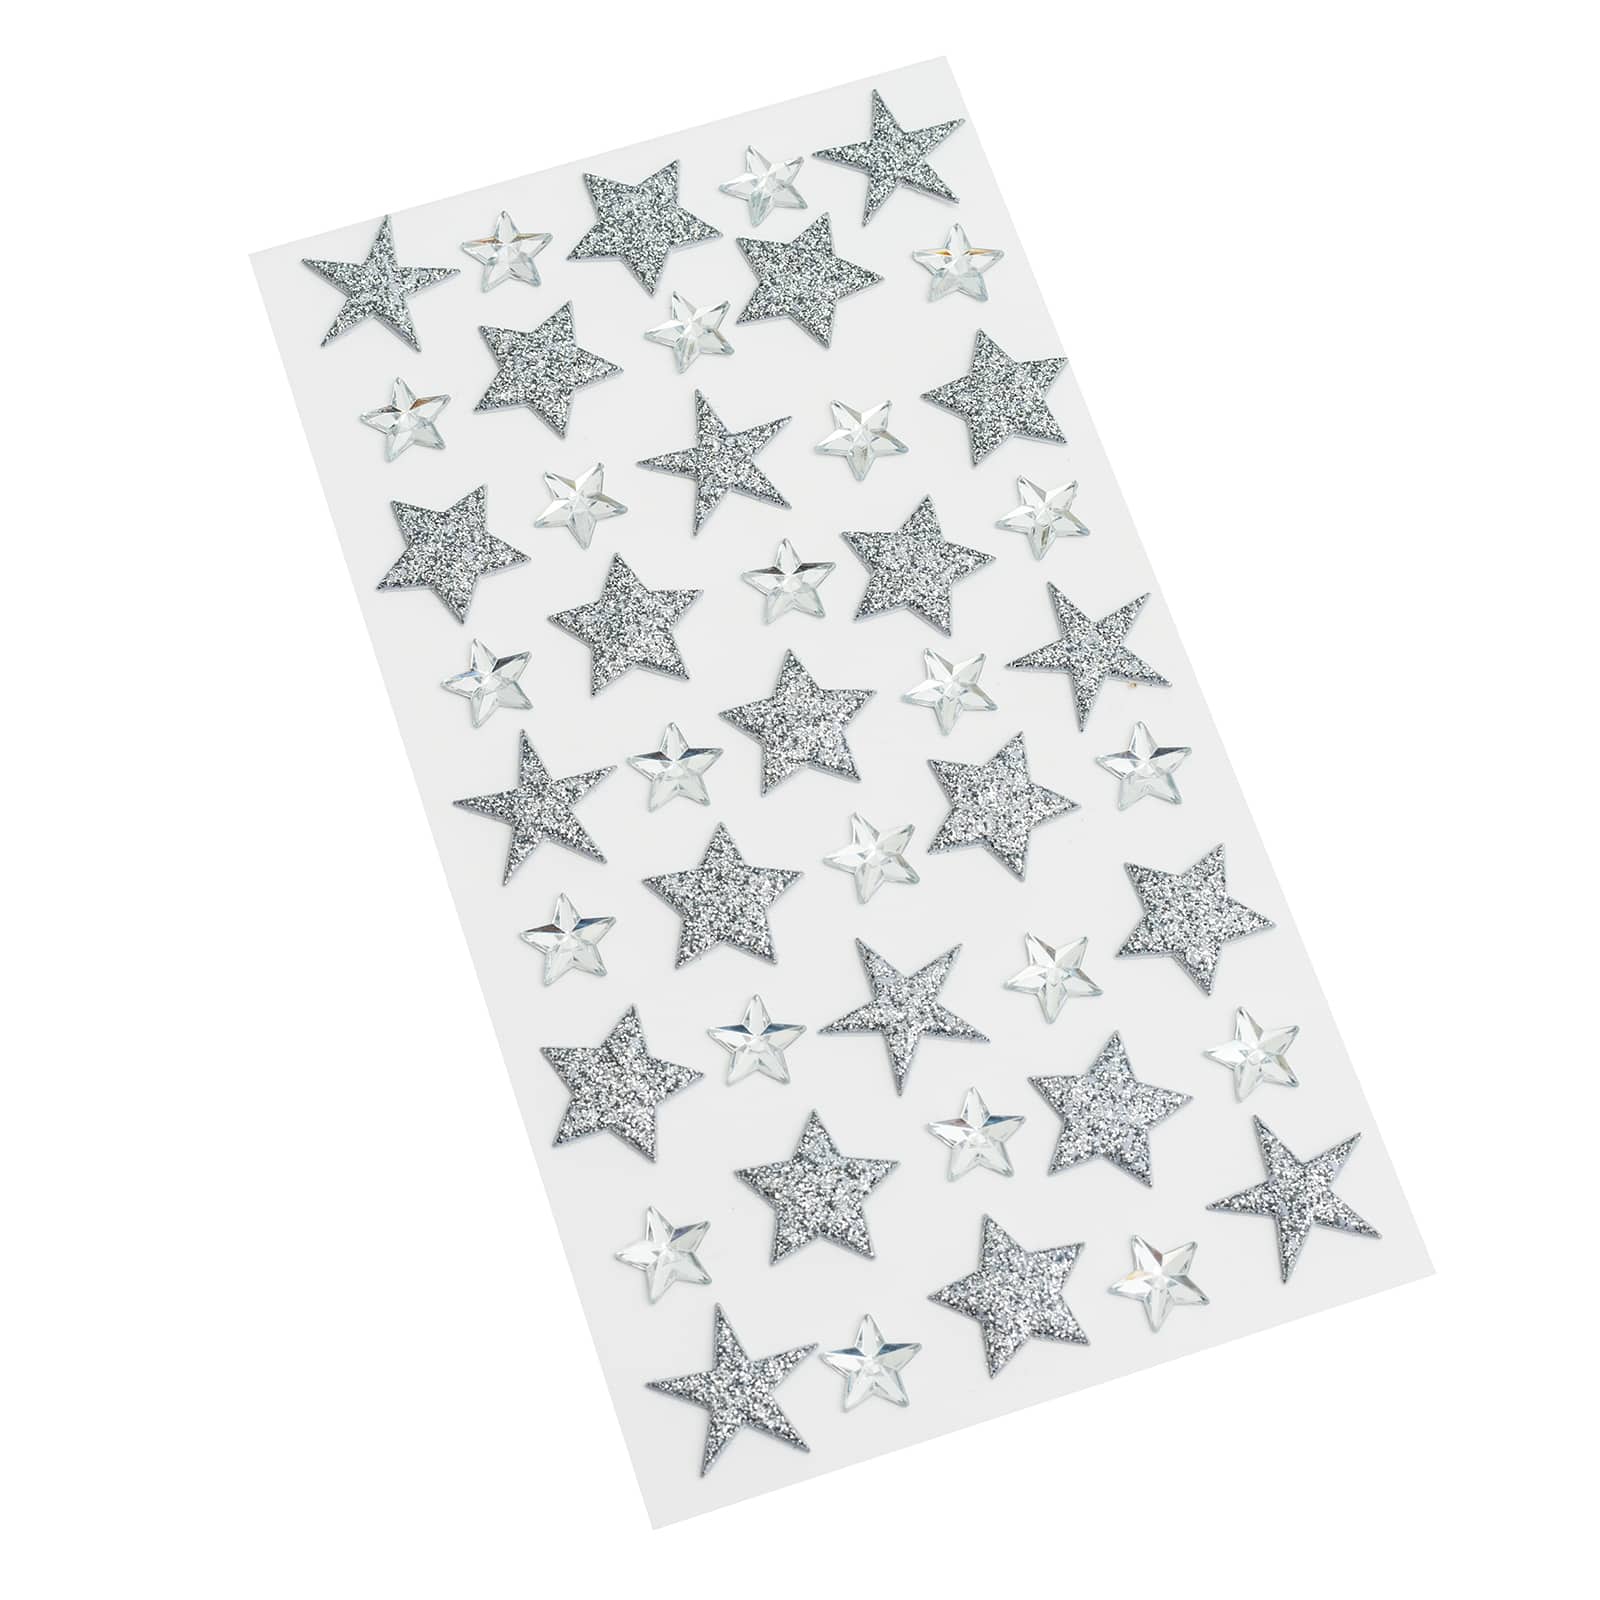 Mini Silver Glitter Holographic Star Stickers 250 Stars 